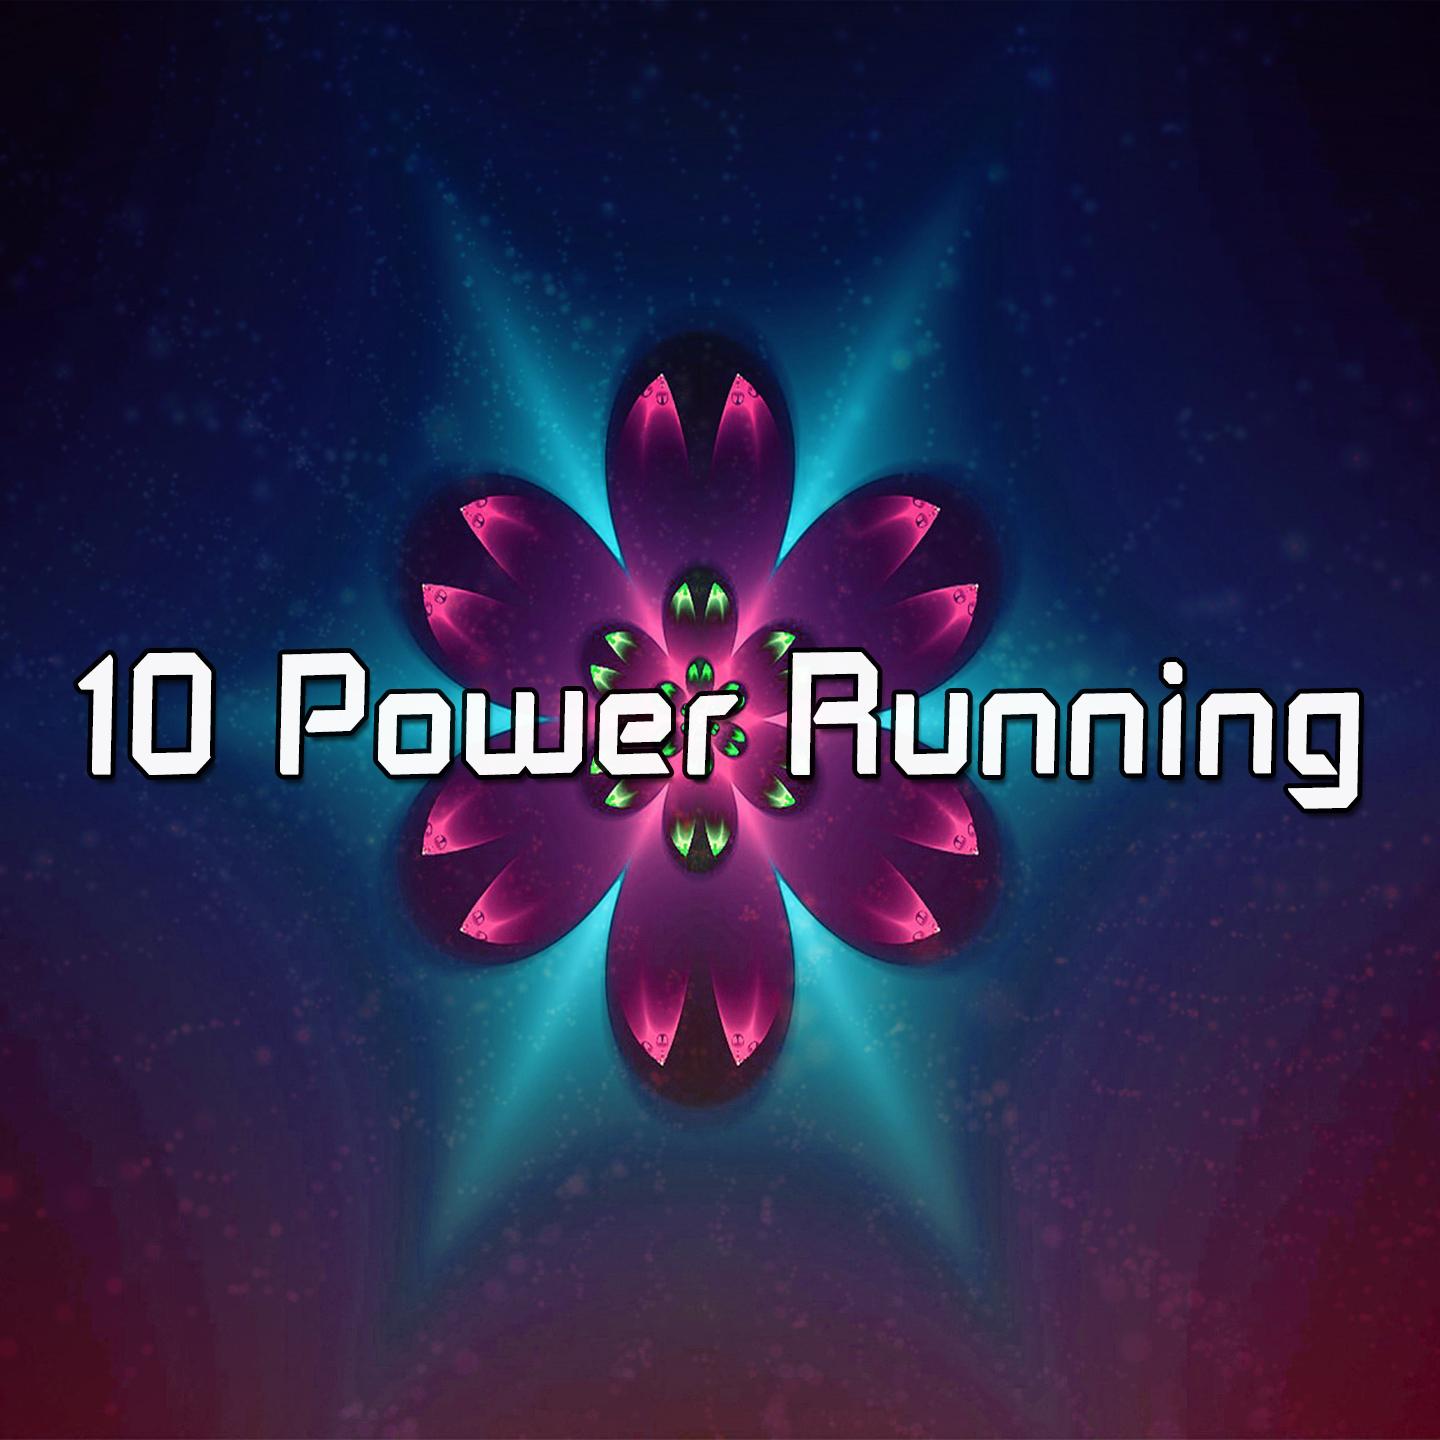 10 Power Running